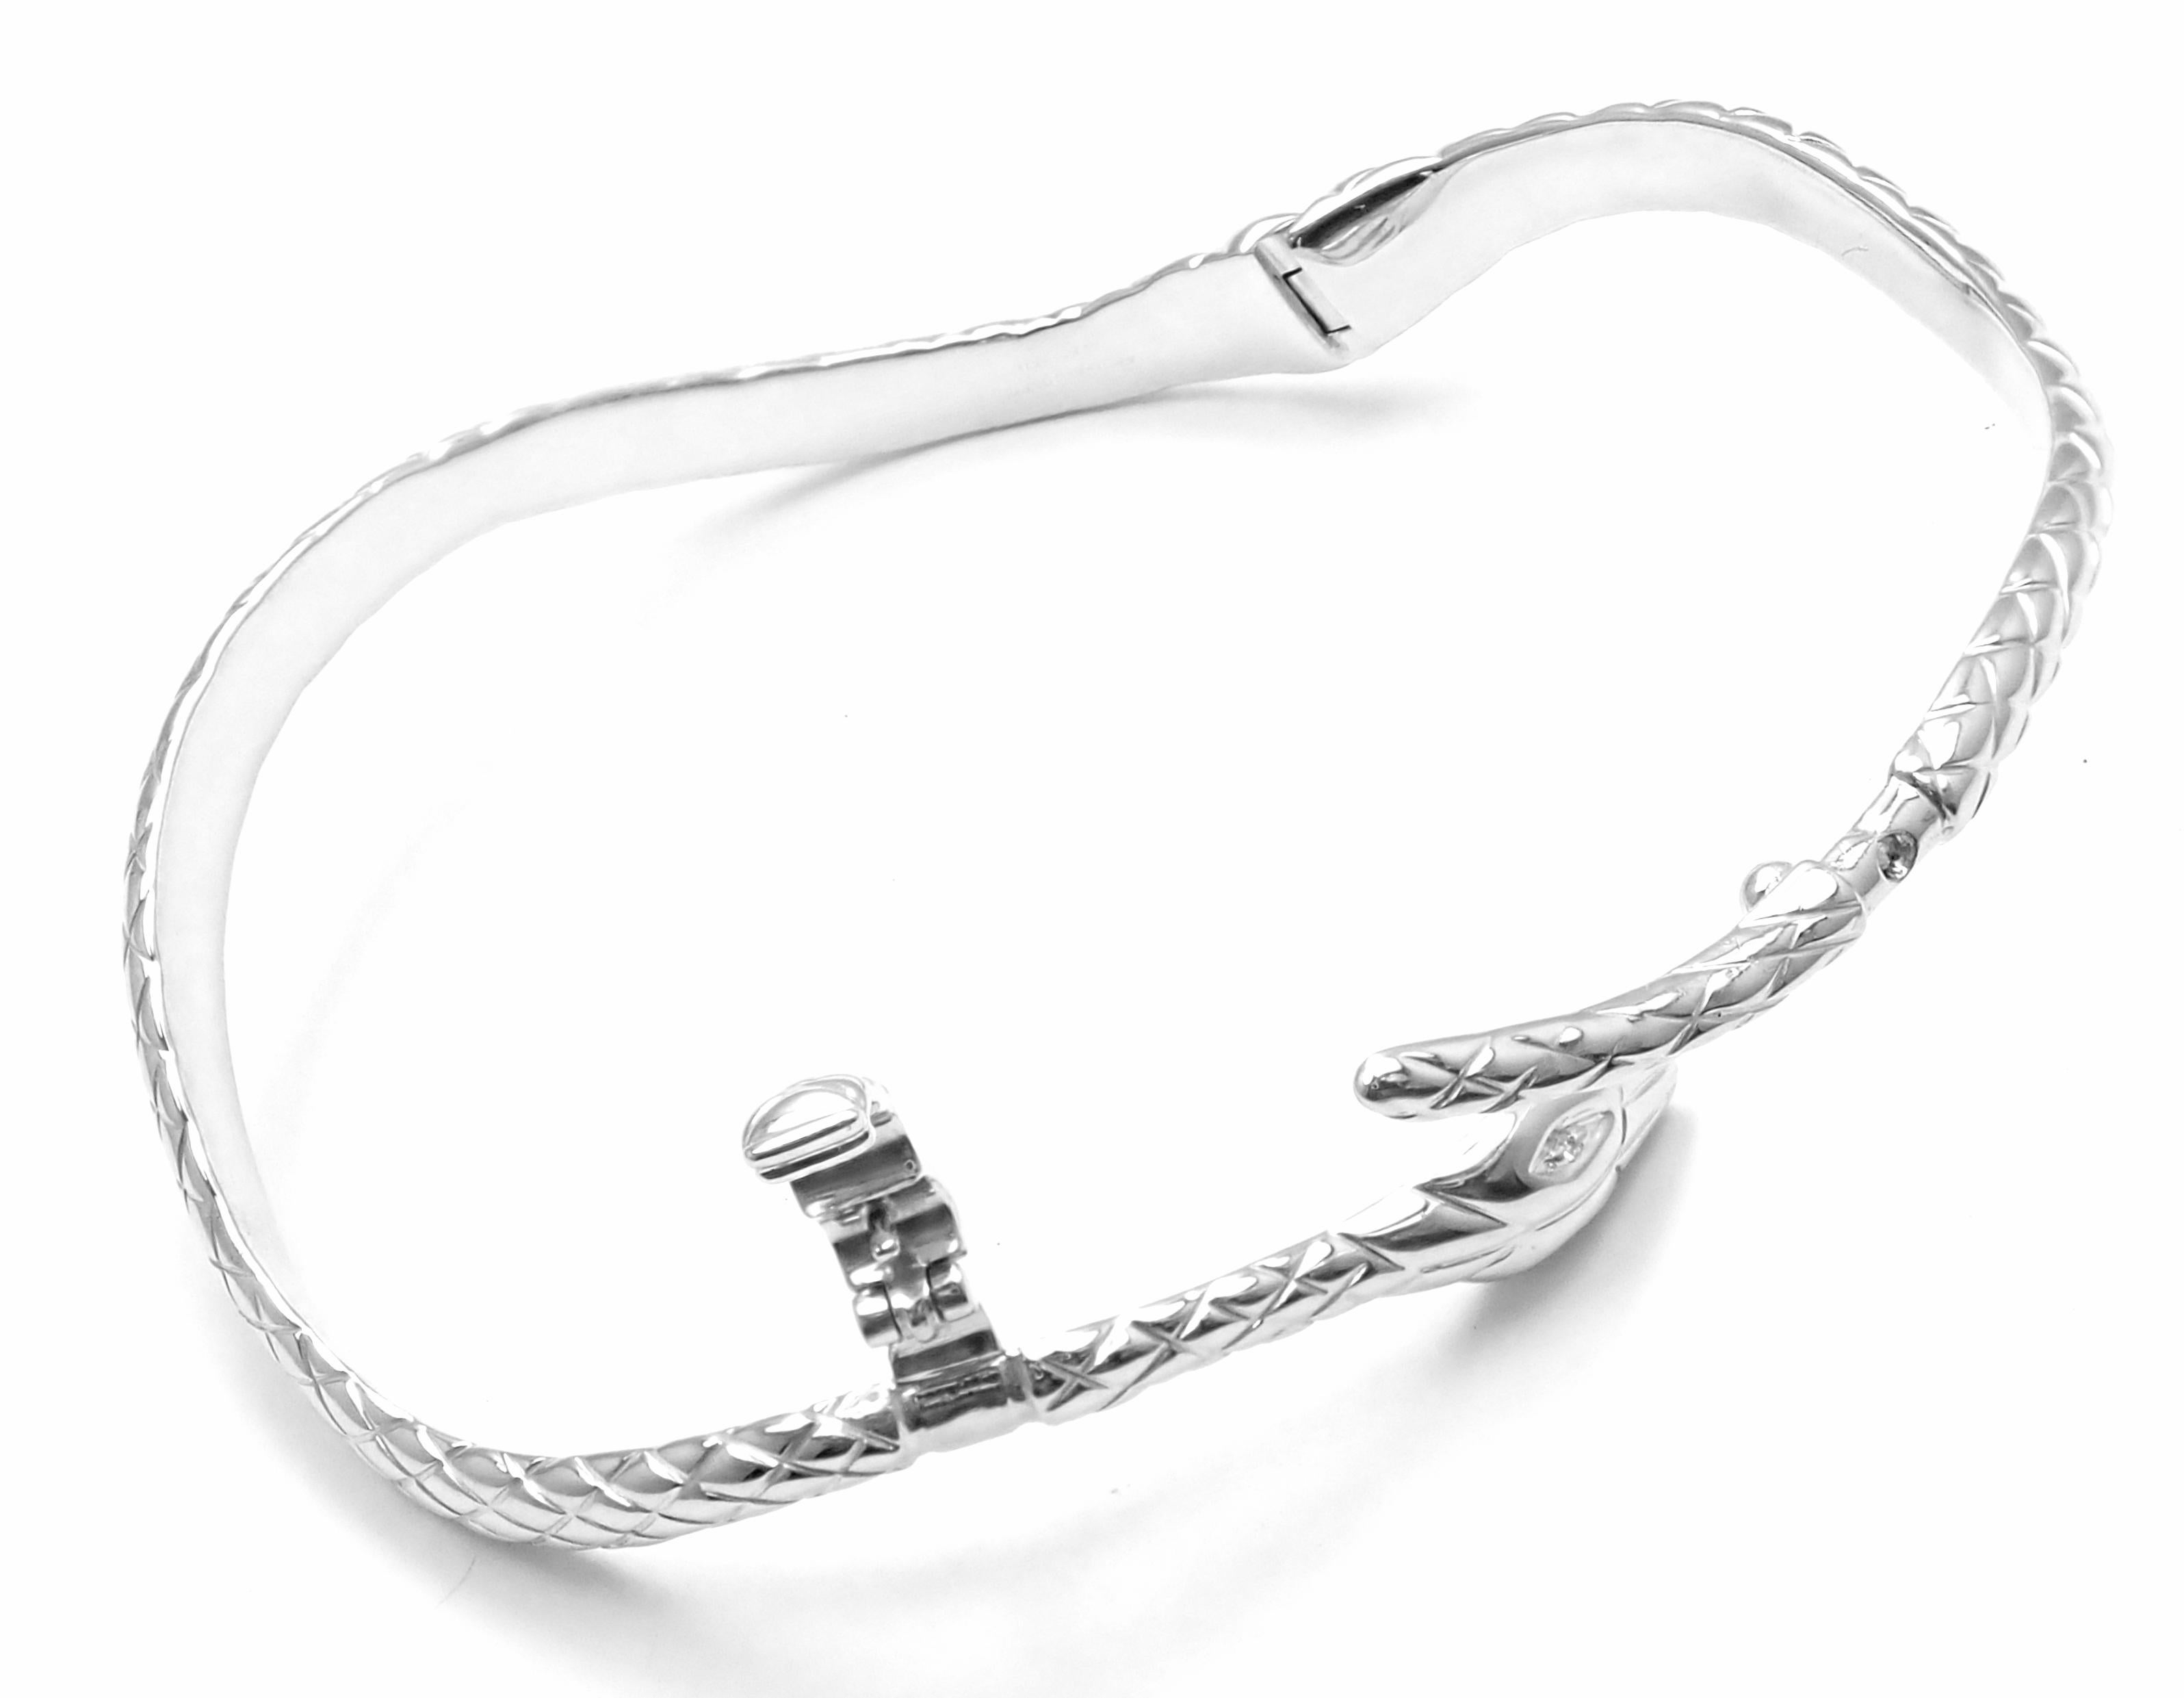 Brilliant Cut Tom Ford Diamond Snake White Gold Bangle Bracelet For Sale